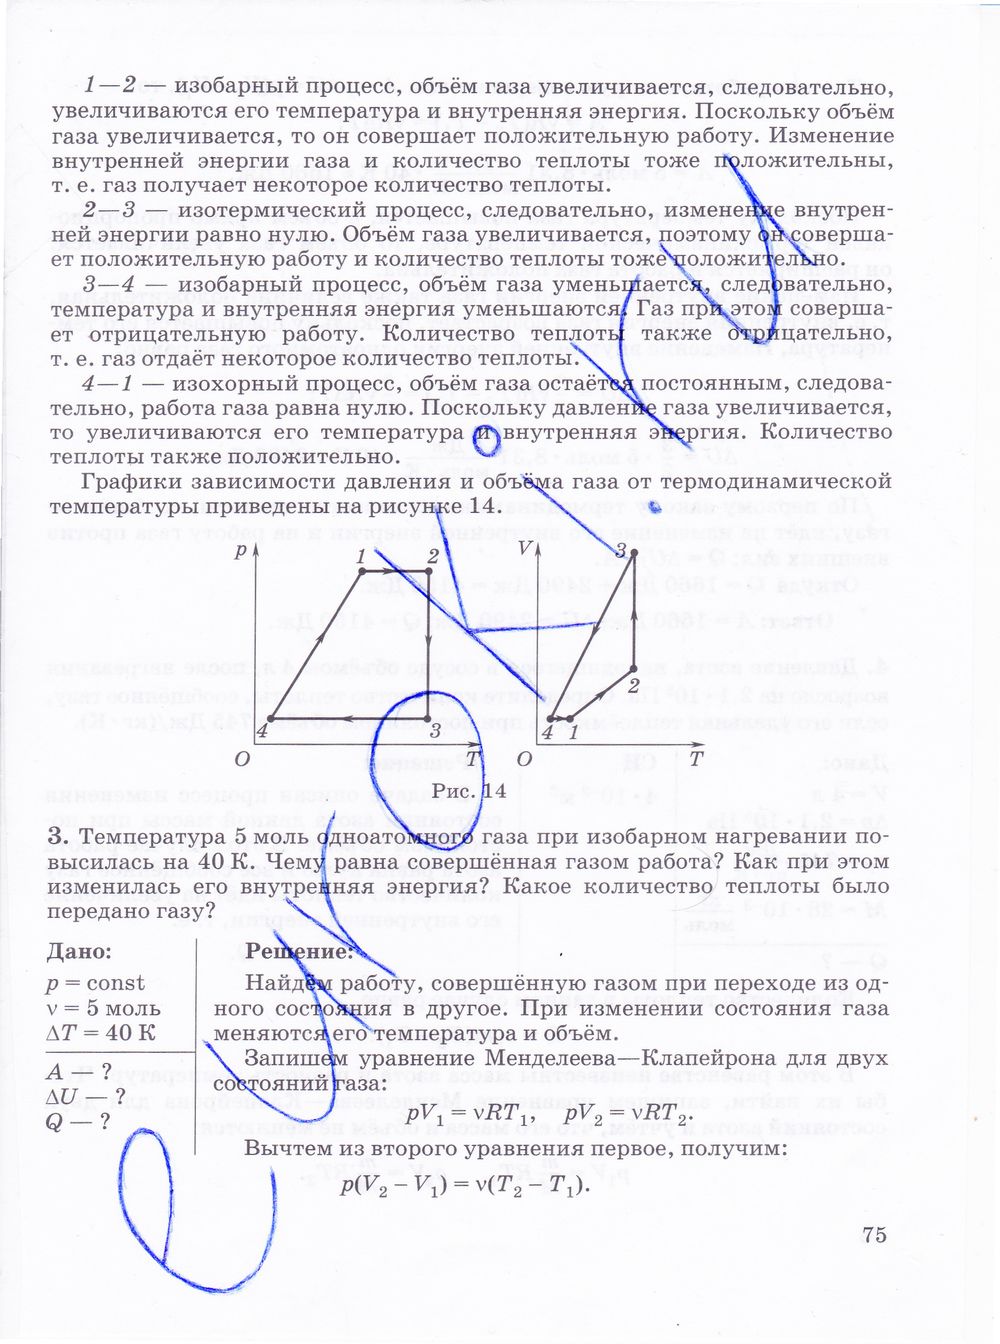 ГДЗ Физика 10 класс - стр. 75